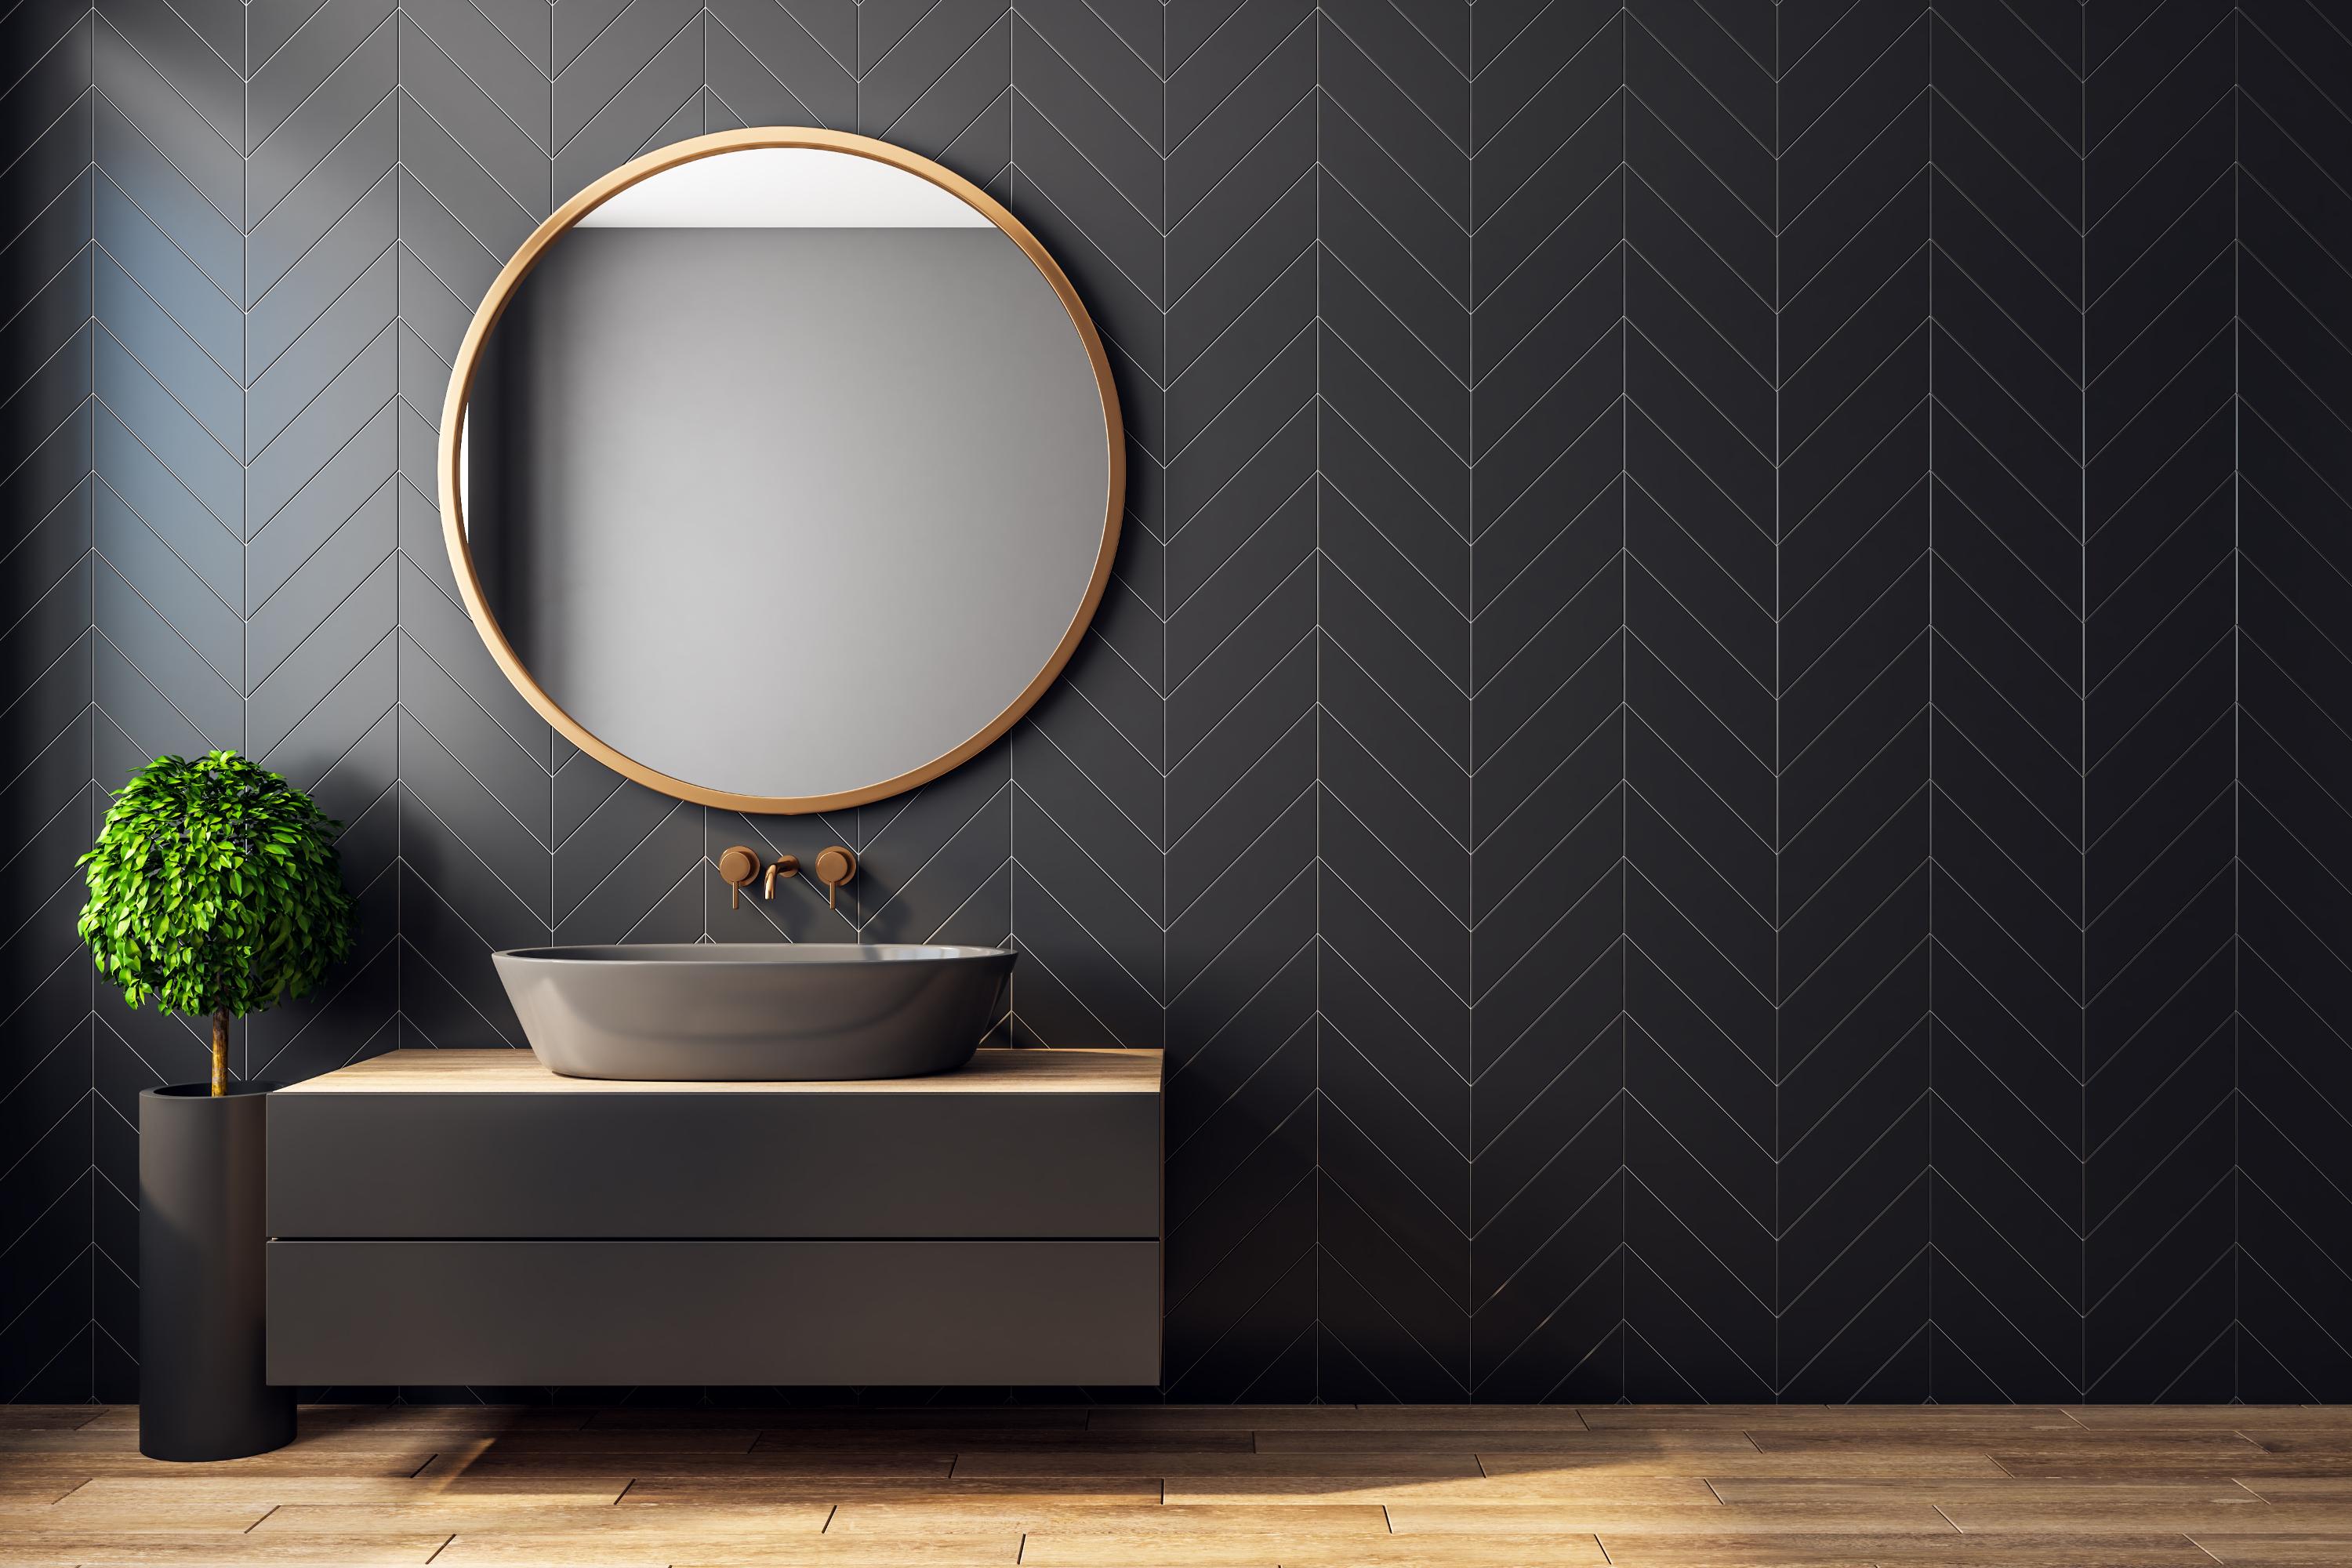 wie und in welcher höhe installiert man einen spiegel? | sanitino.de